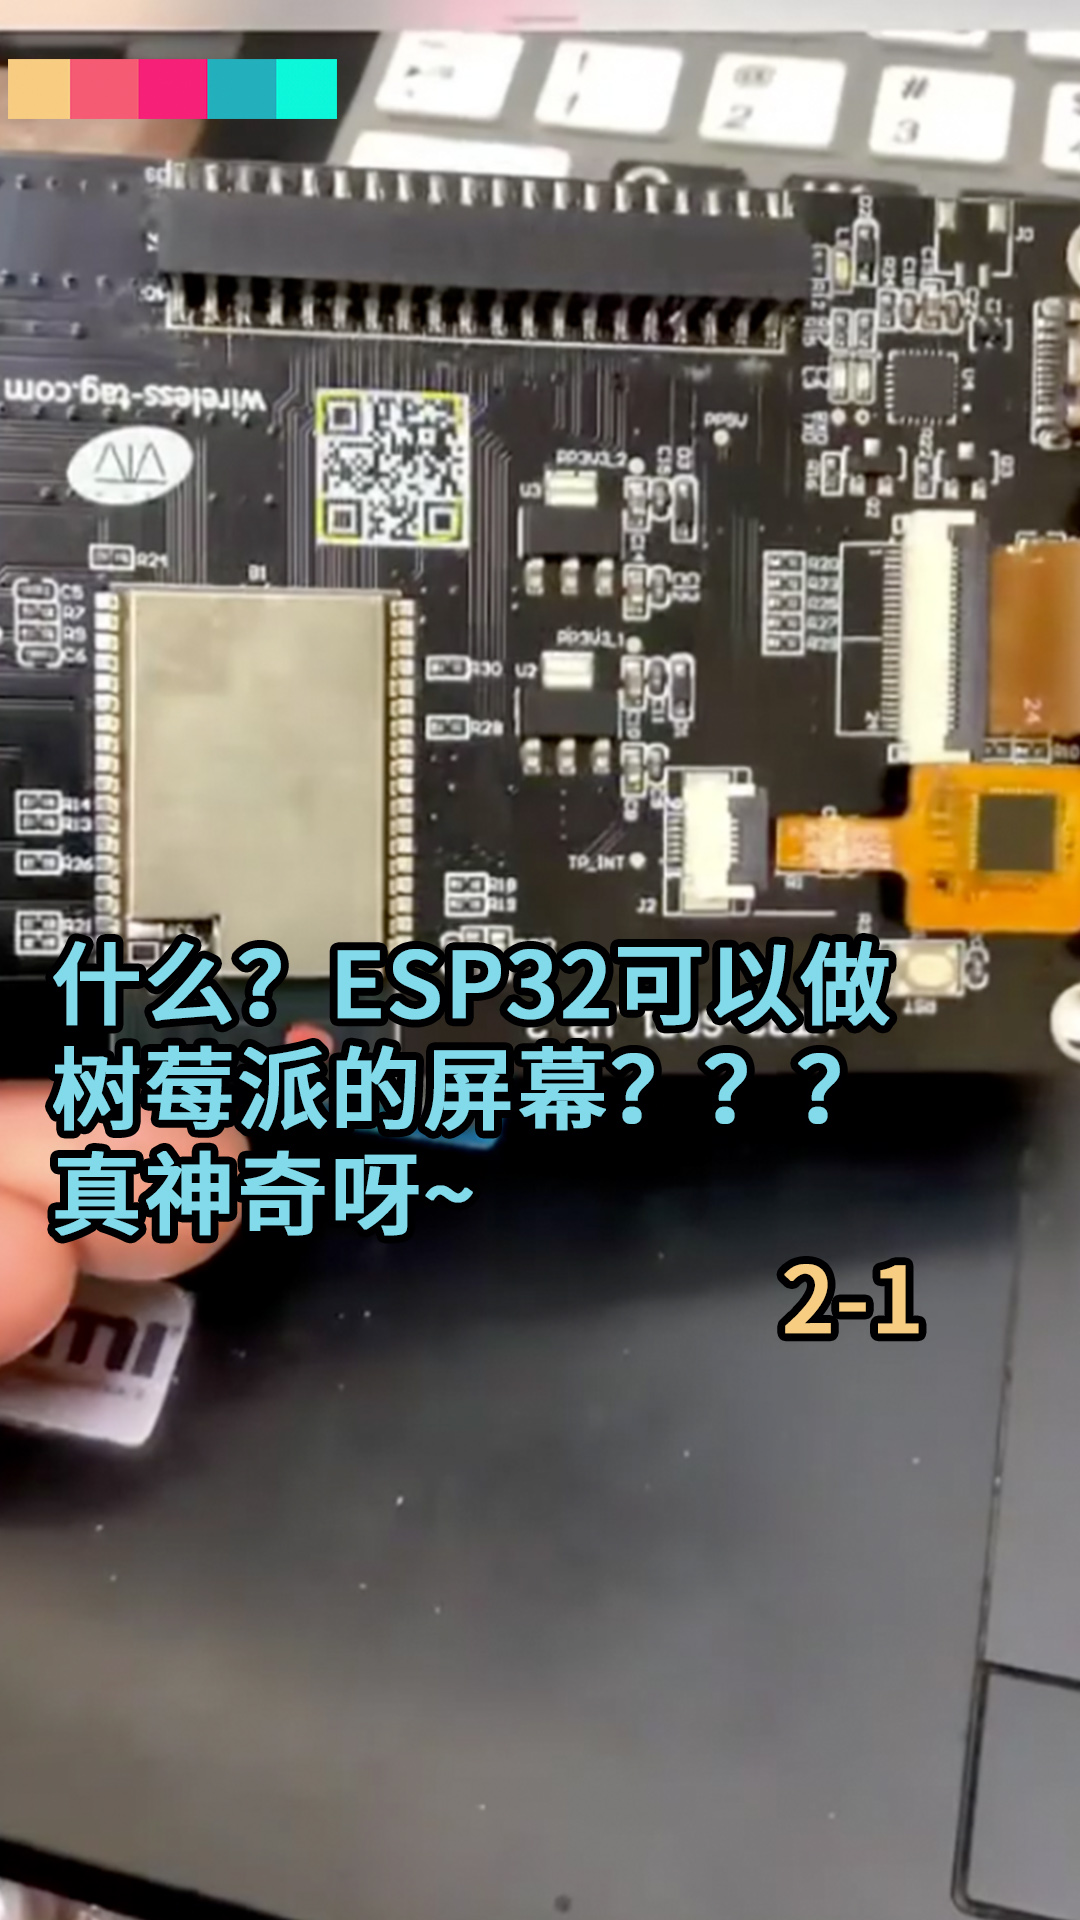 什么？ESP32可以做树莓派的屏幕？？？真神奇呀~2-1#ESP32 #树莓派开发 